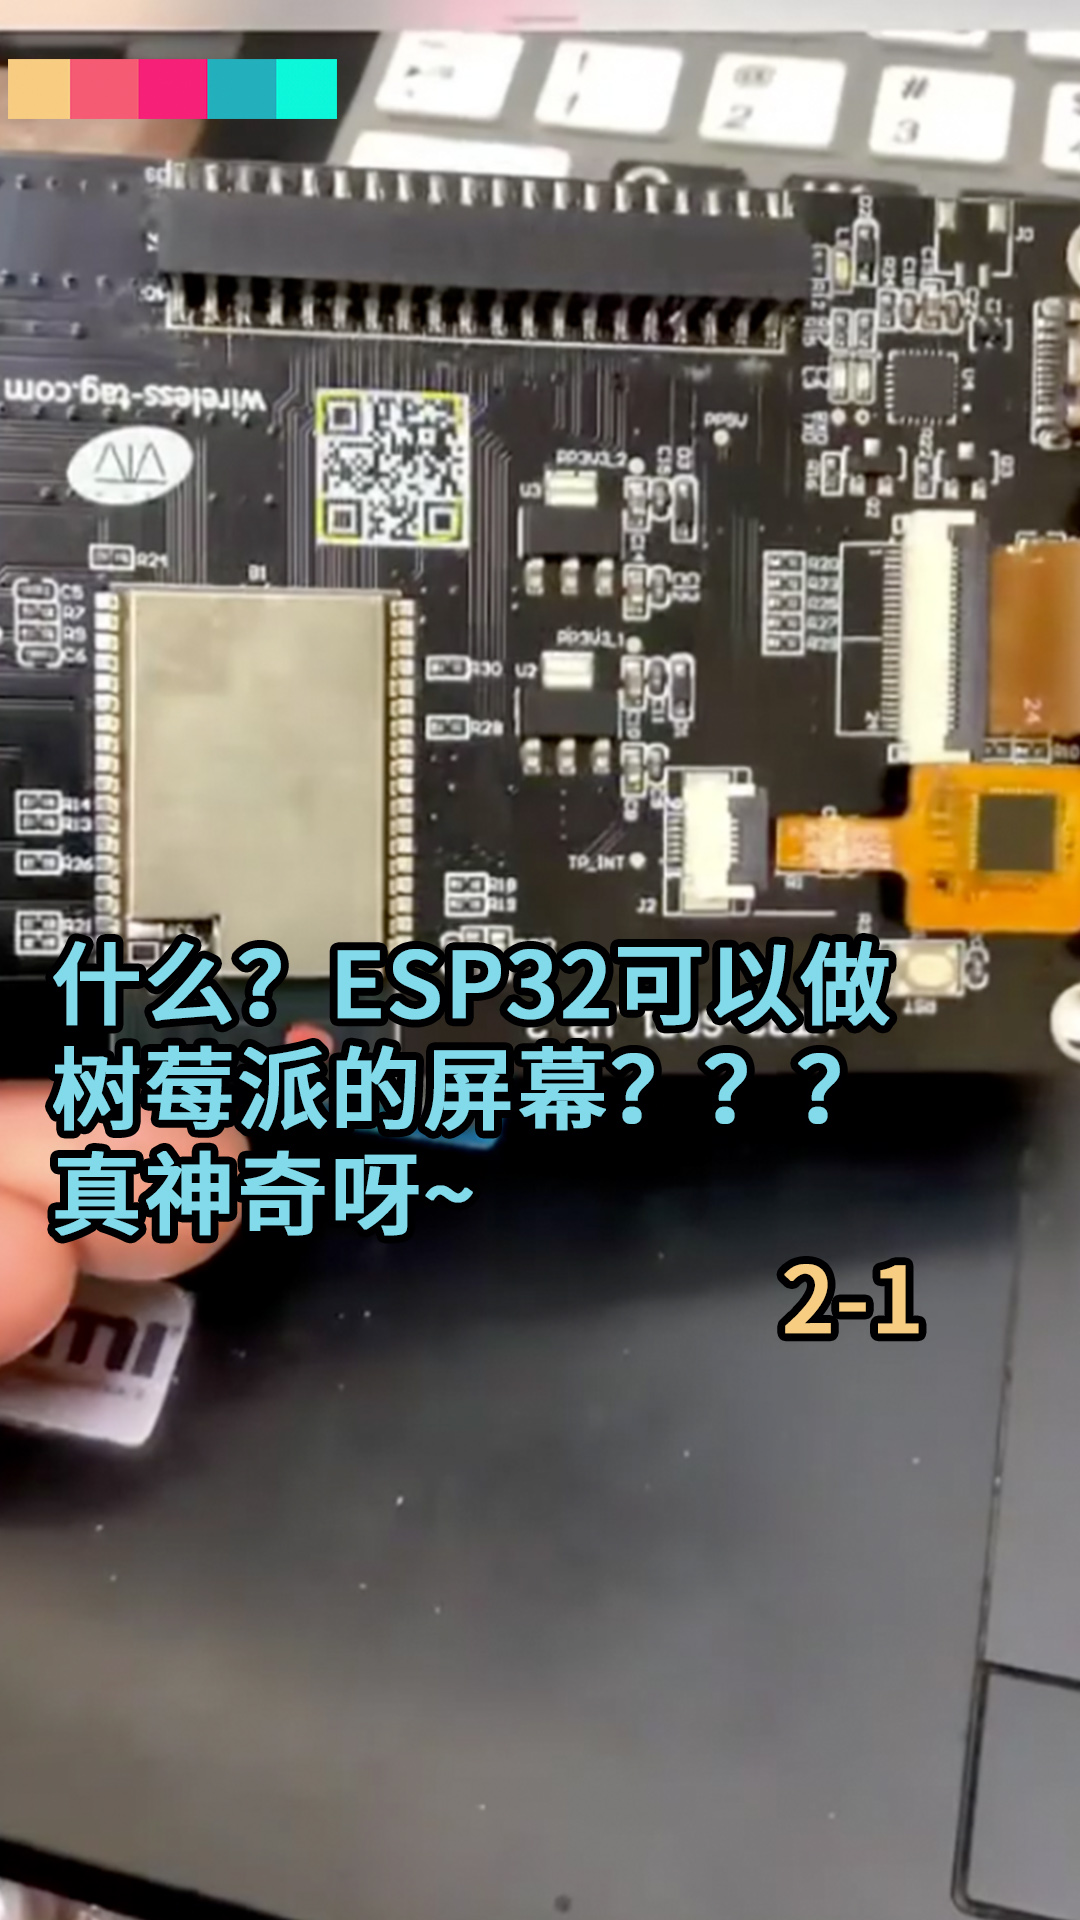 什么？ESP32可以做树莓派的屏幕？？？真神奇呀~2-1#ESP32 #树莓派开发 